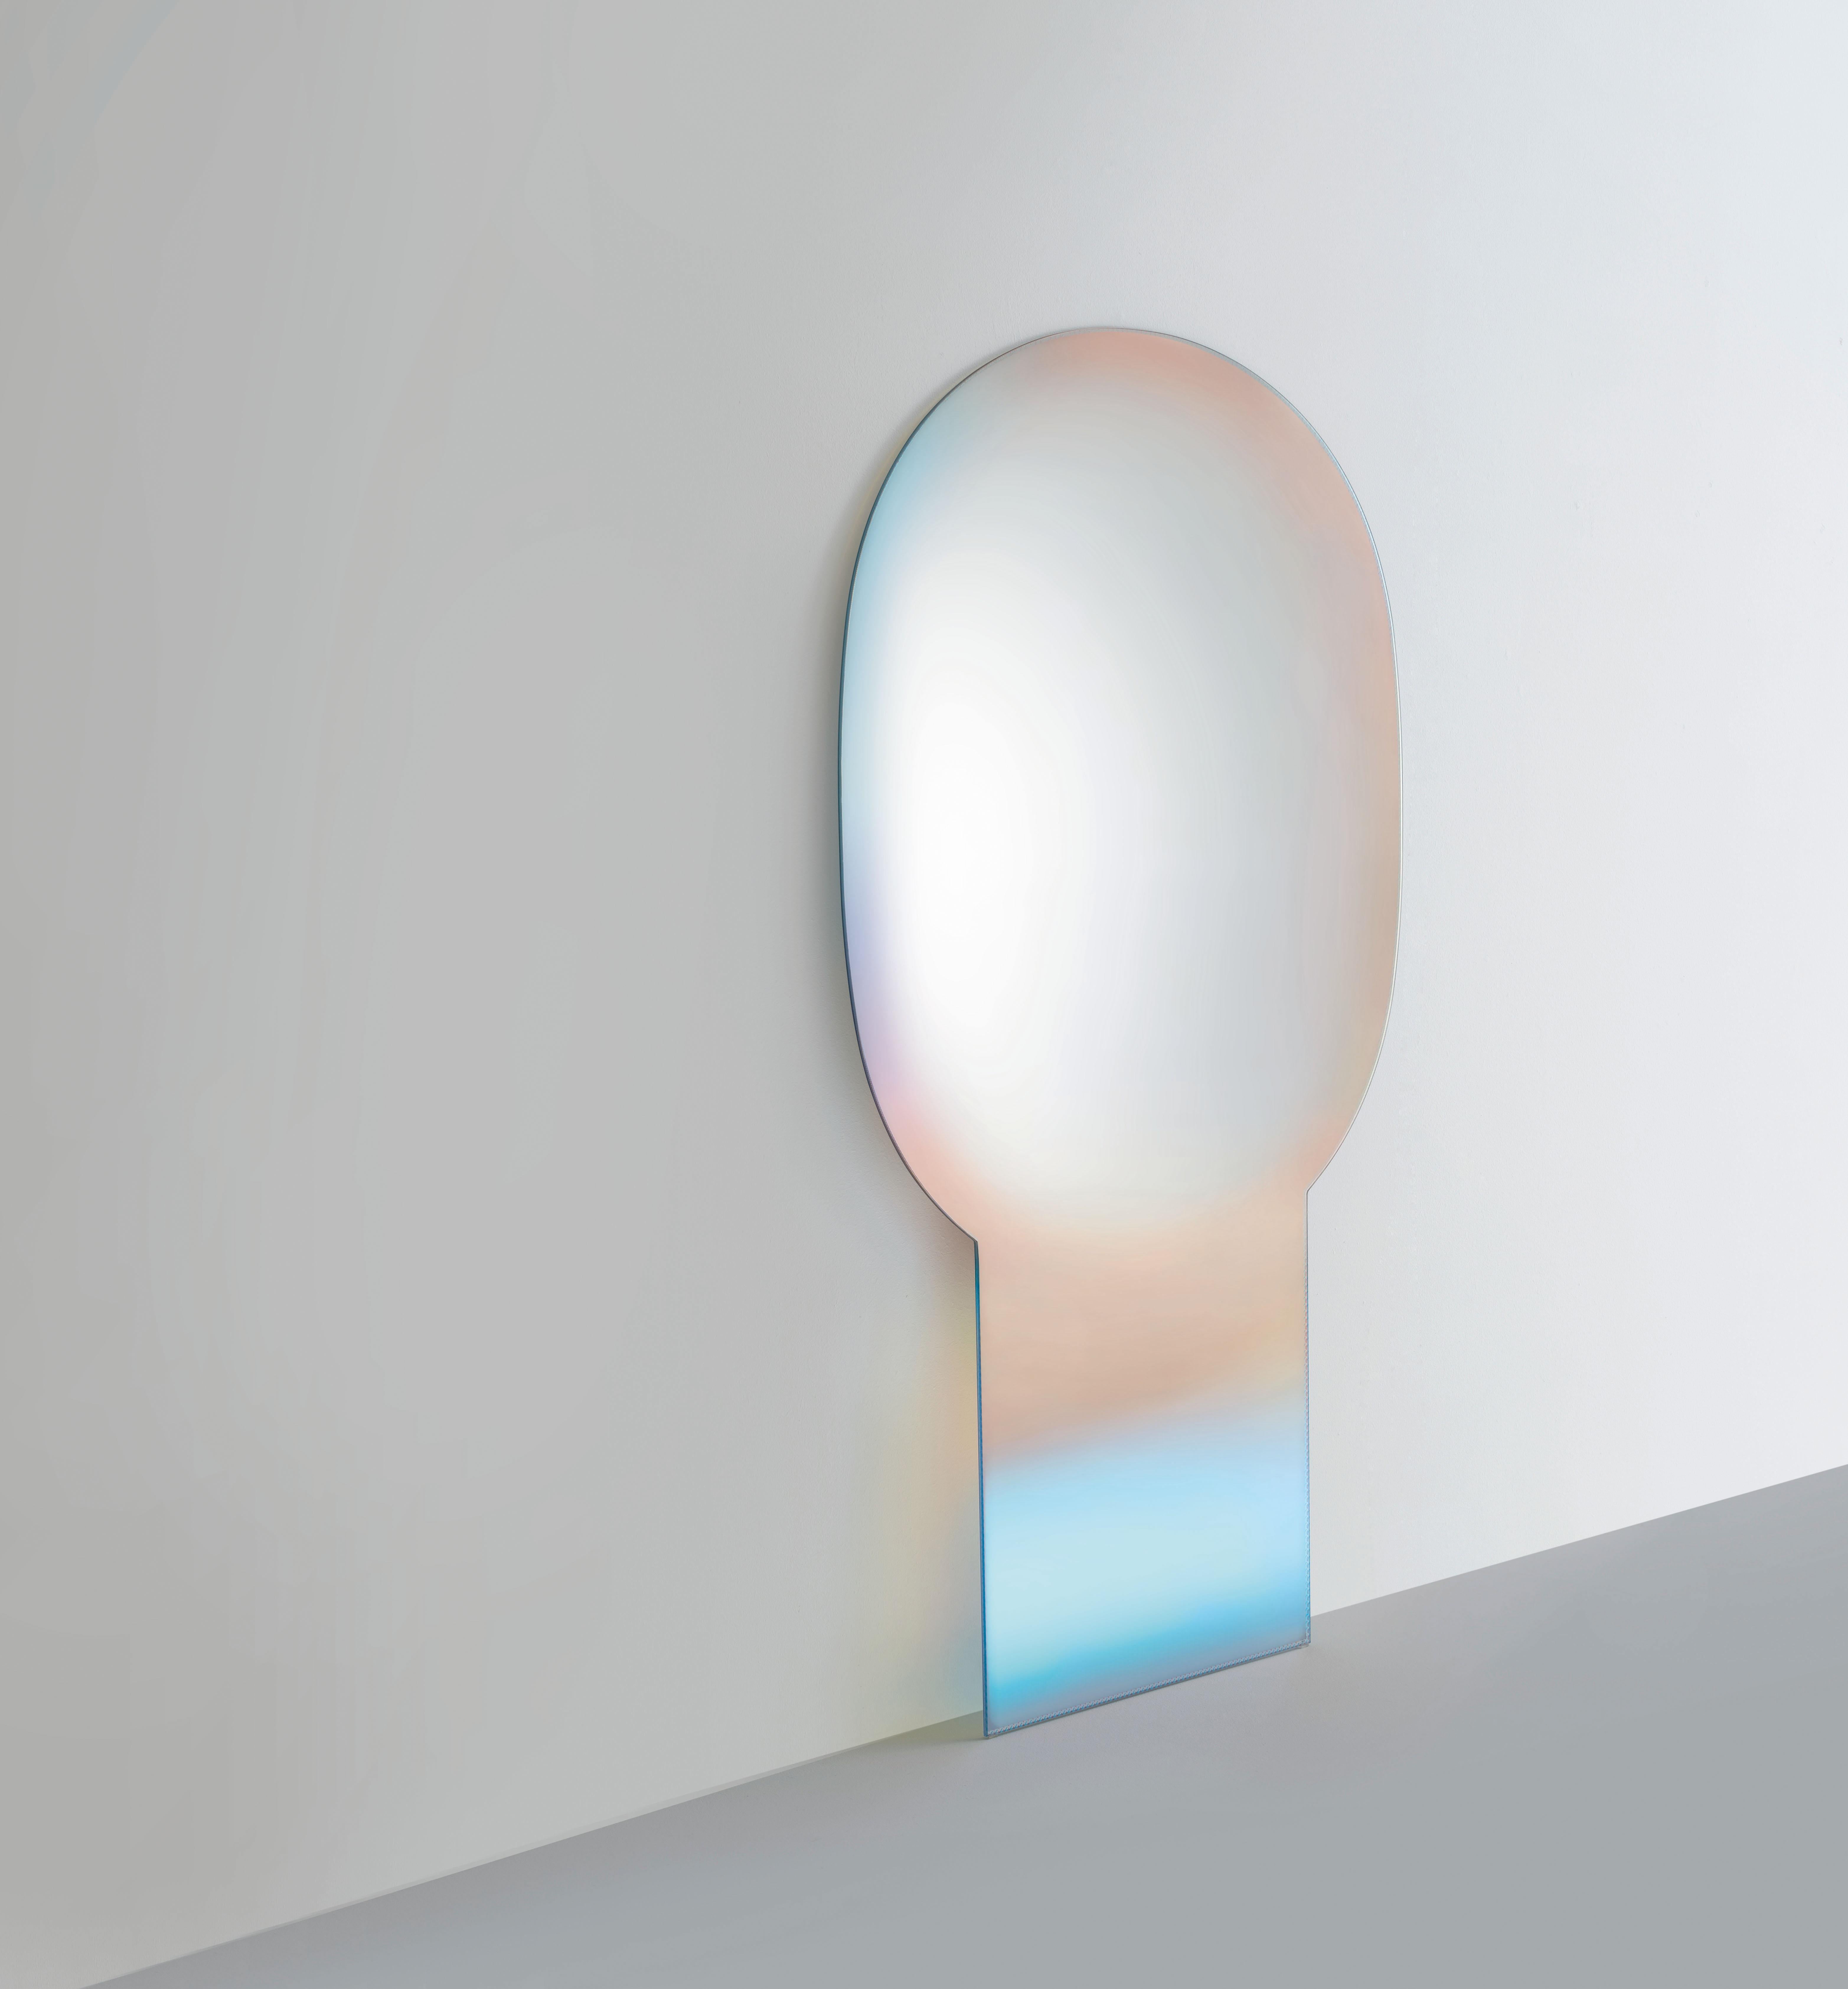 Der Specchi-Spiegel Shimmer wird hier in der Ausführung mit extra hellem Glas gezeigt. Eine Serie von Spiegeln aus extra hellem Glas. Hergestellt mit raffinierten Verarbeitungstechniken, einer abnehmenden schattierten Versilberung und dem herrlichen